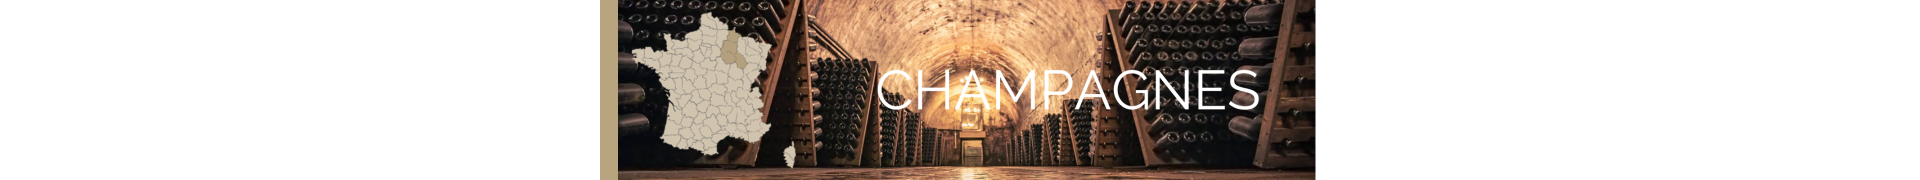 Champagnes - La cave des CE